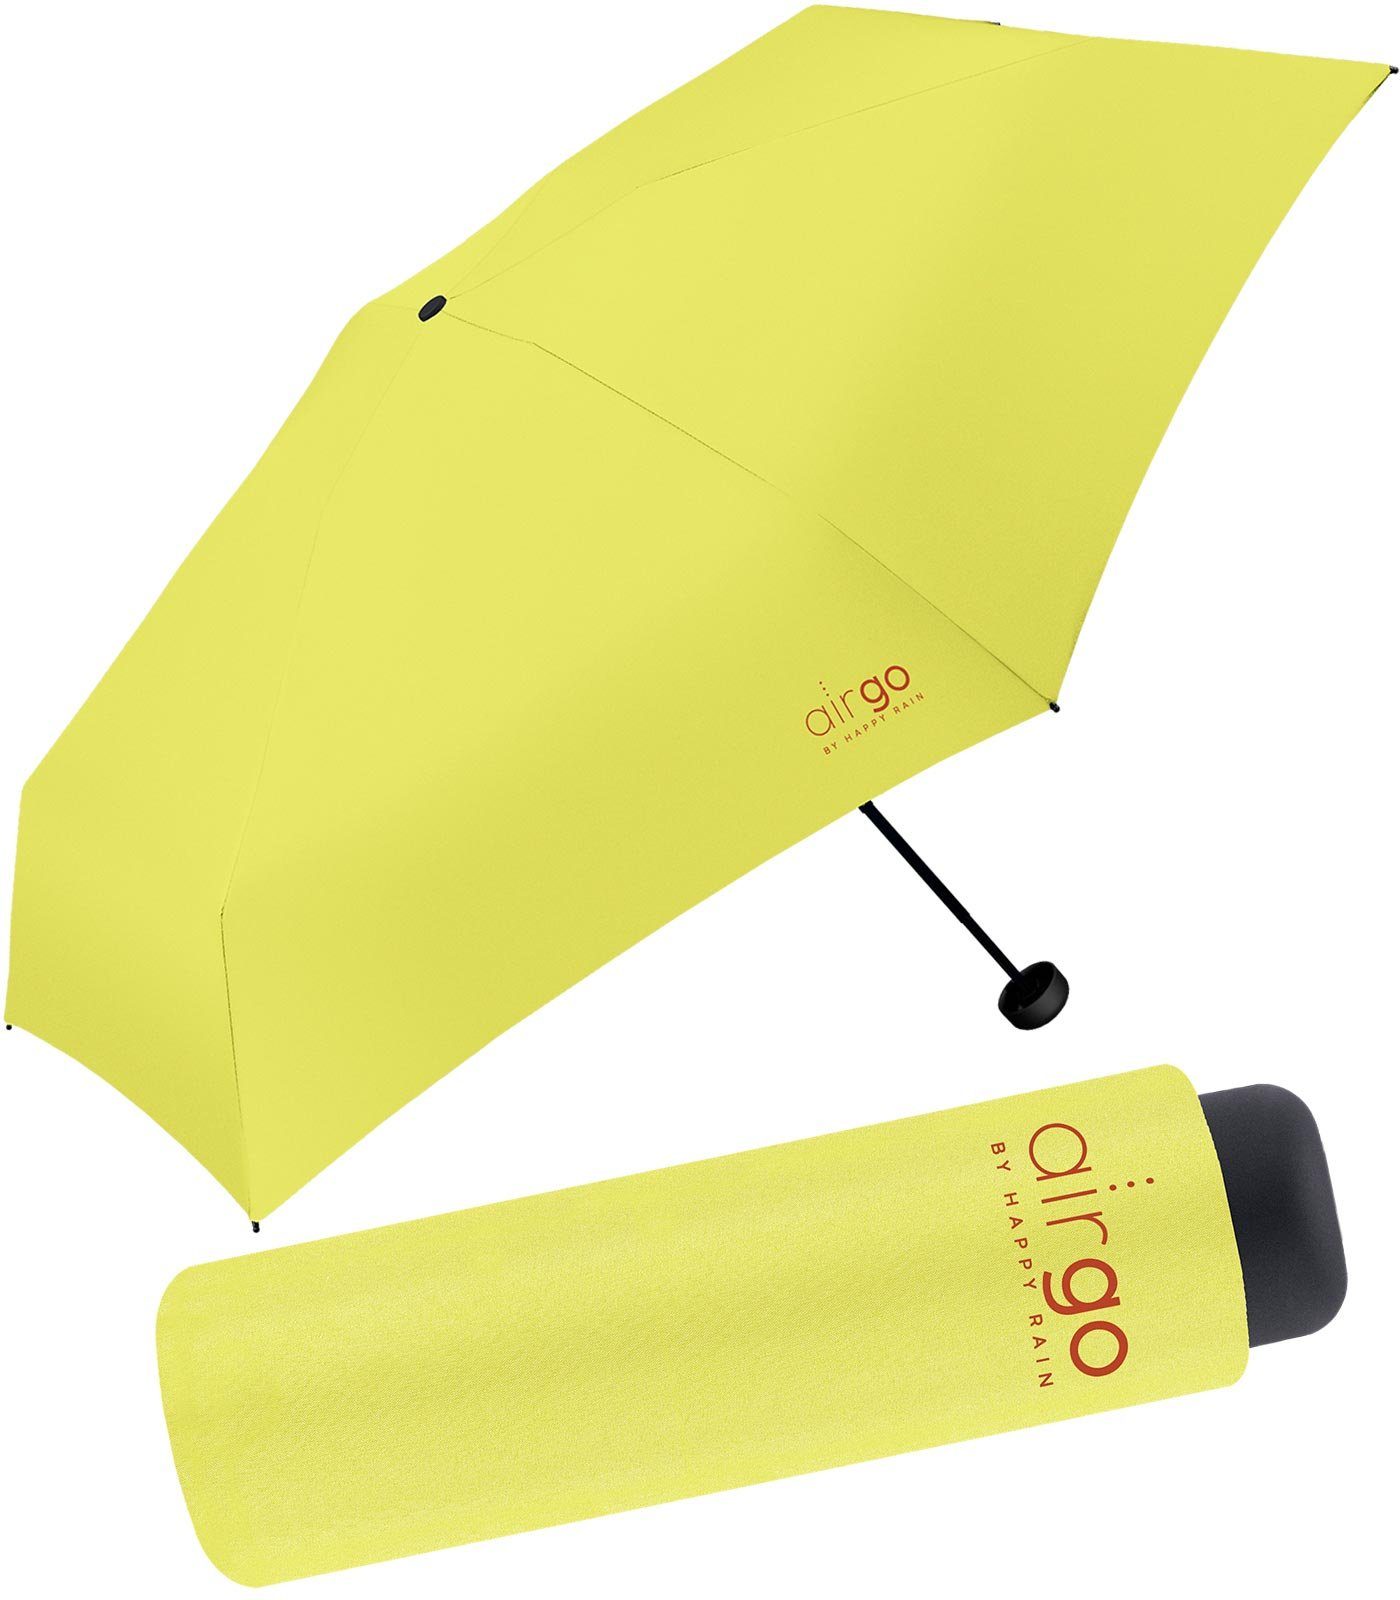 HAPPY RAIN Taschenregenschirm Air Go - 137 Gramm Supermini-Schirm superleicht, perfekt für die Handtasche und das Reisegepäck gelb